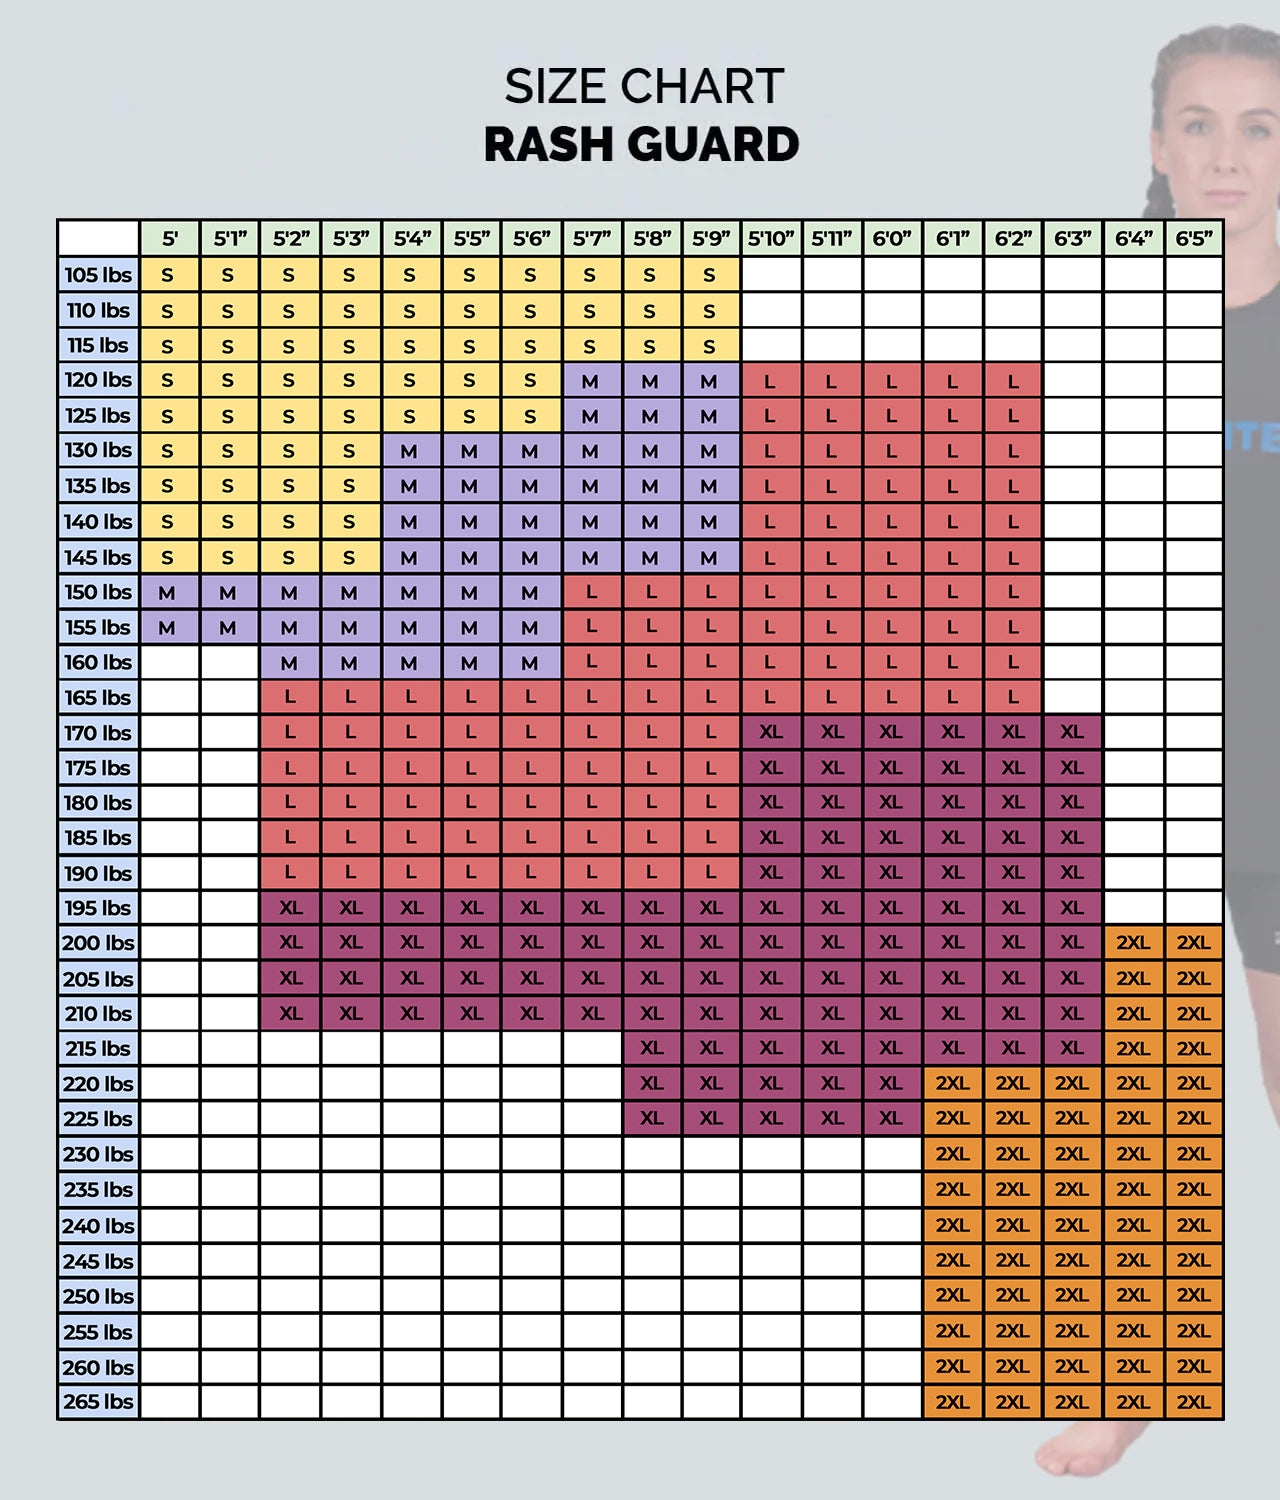 Elite Sports Women's Standard Purple Long Sleeve MMA Rash Guard Size Guide